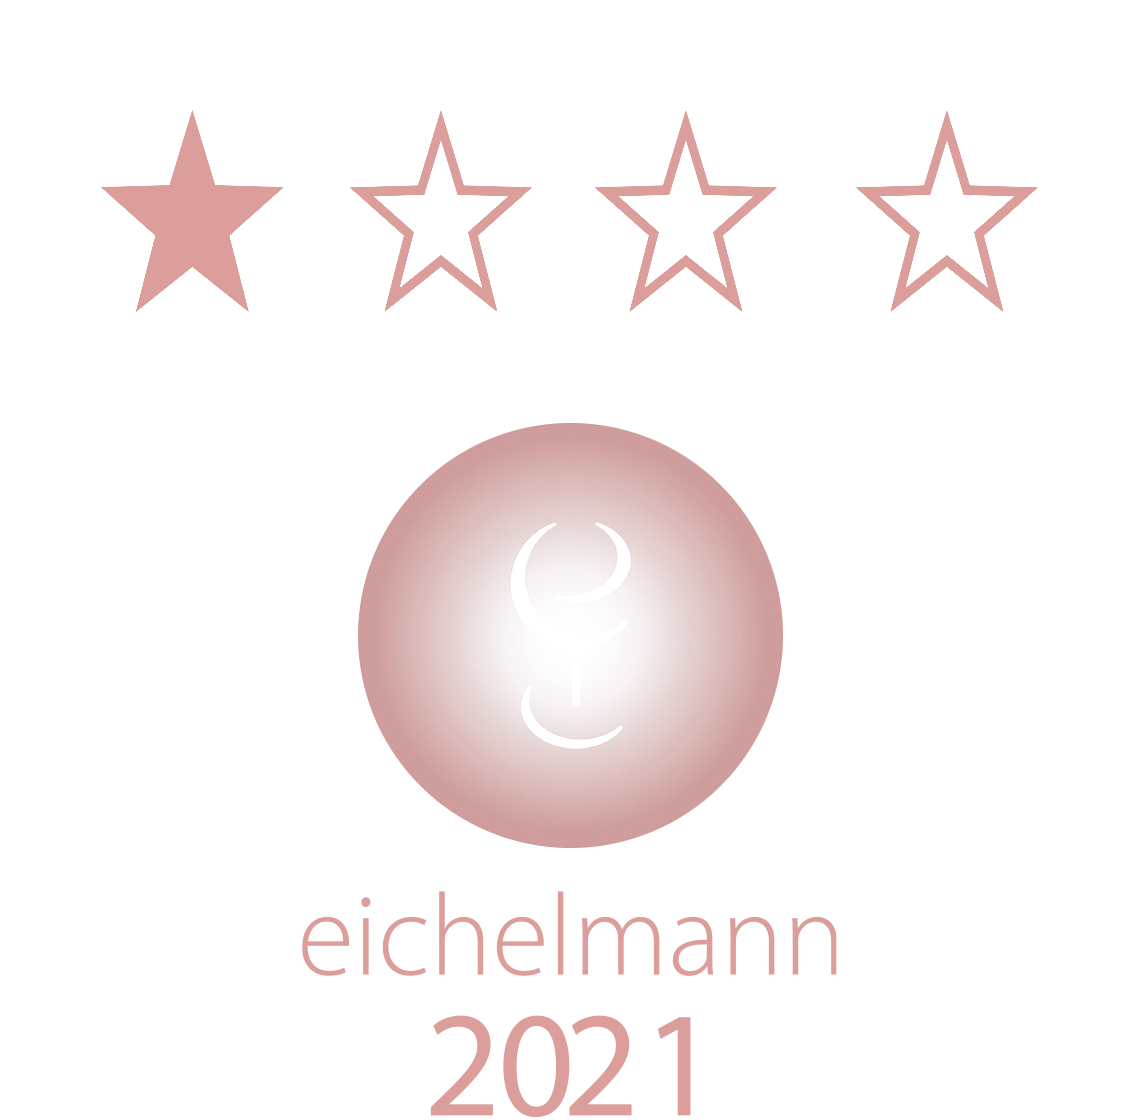 Eichelmann, Weinguide, Maier, Weingut Maier, Haueneberstein, Weinguthotel, Weinhotel, Weinbleibe, Bewertung